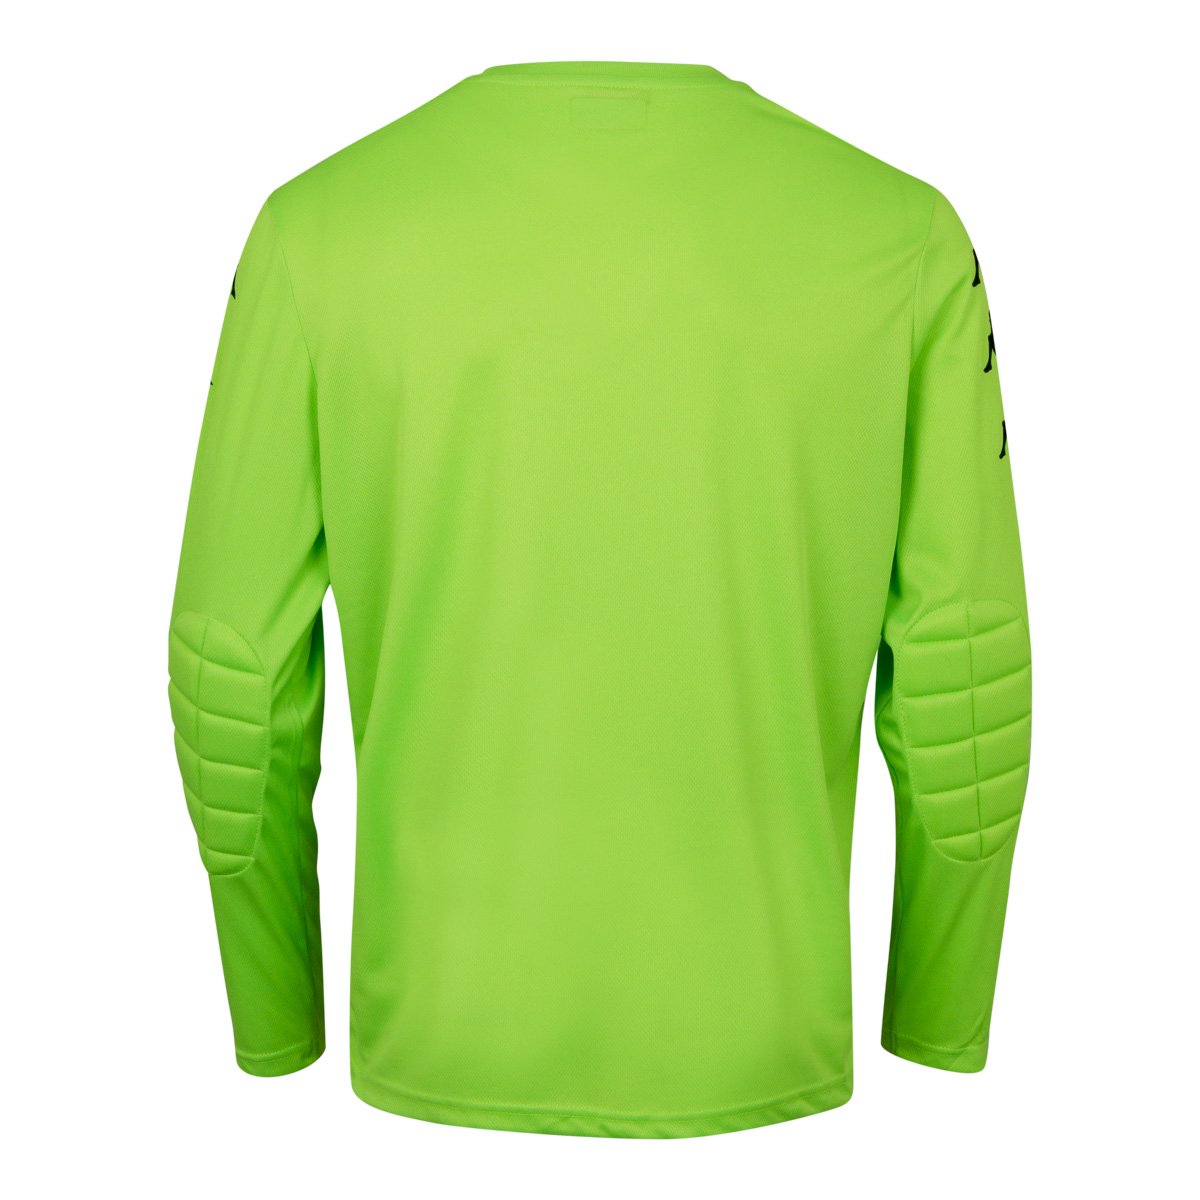 Camiseta de juego Fútbol Portero Verde Niños - Imagen 2